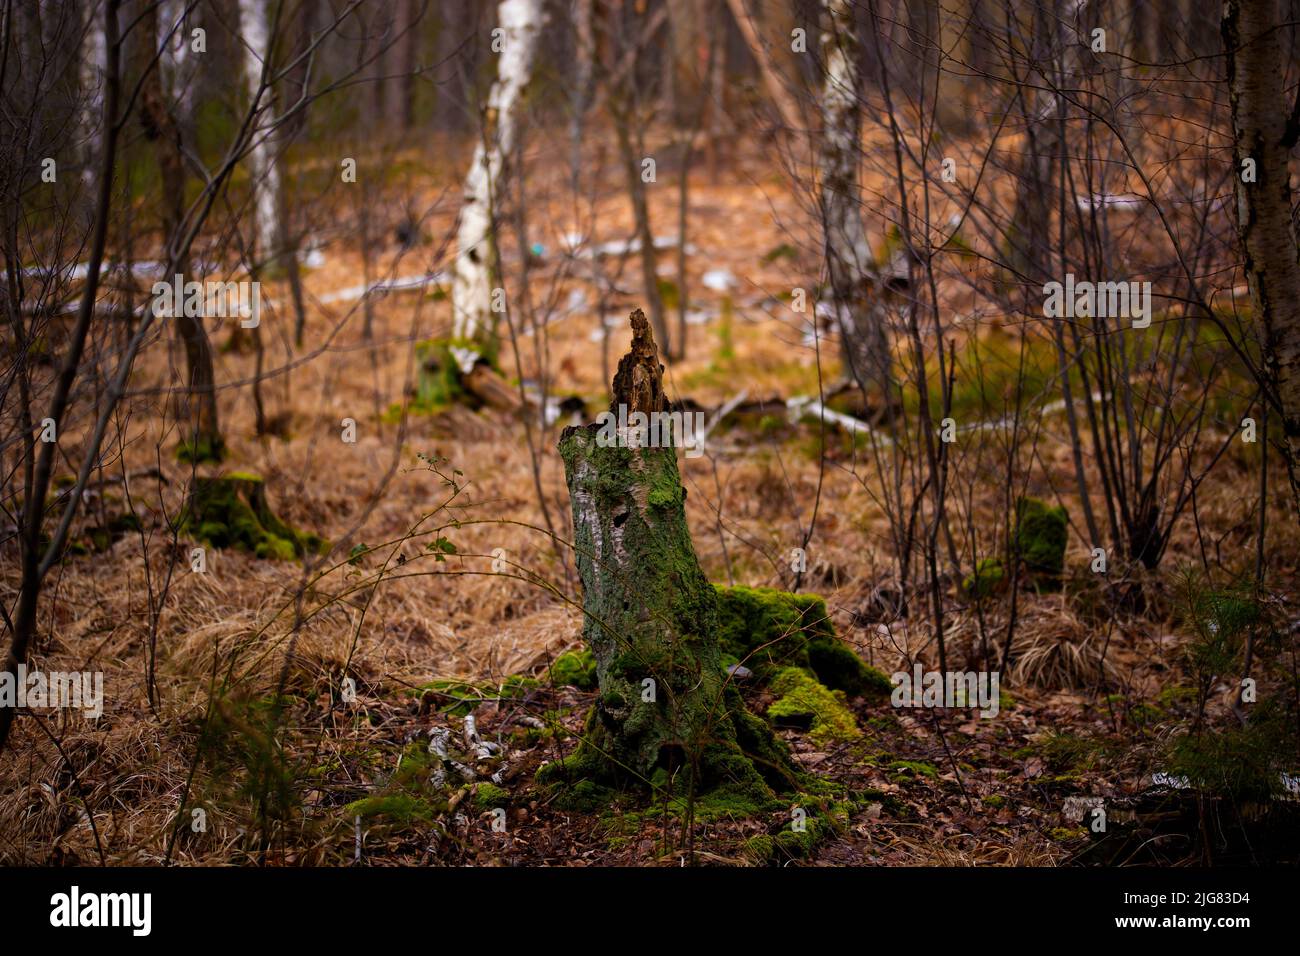 Ceppo di albero da un albero di betulla nella foresta, profondità di campo poco profonda, bokeh fuzzy Foto Stock